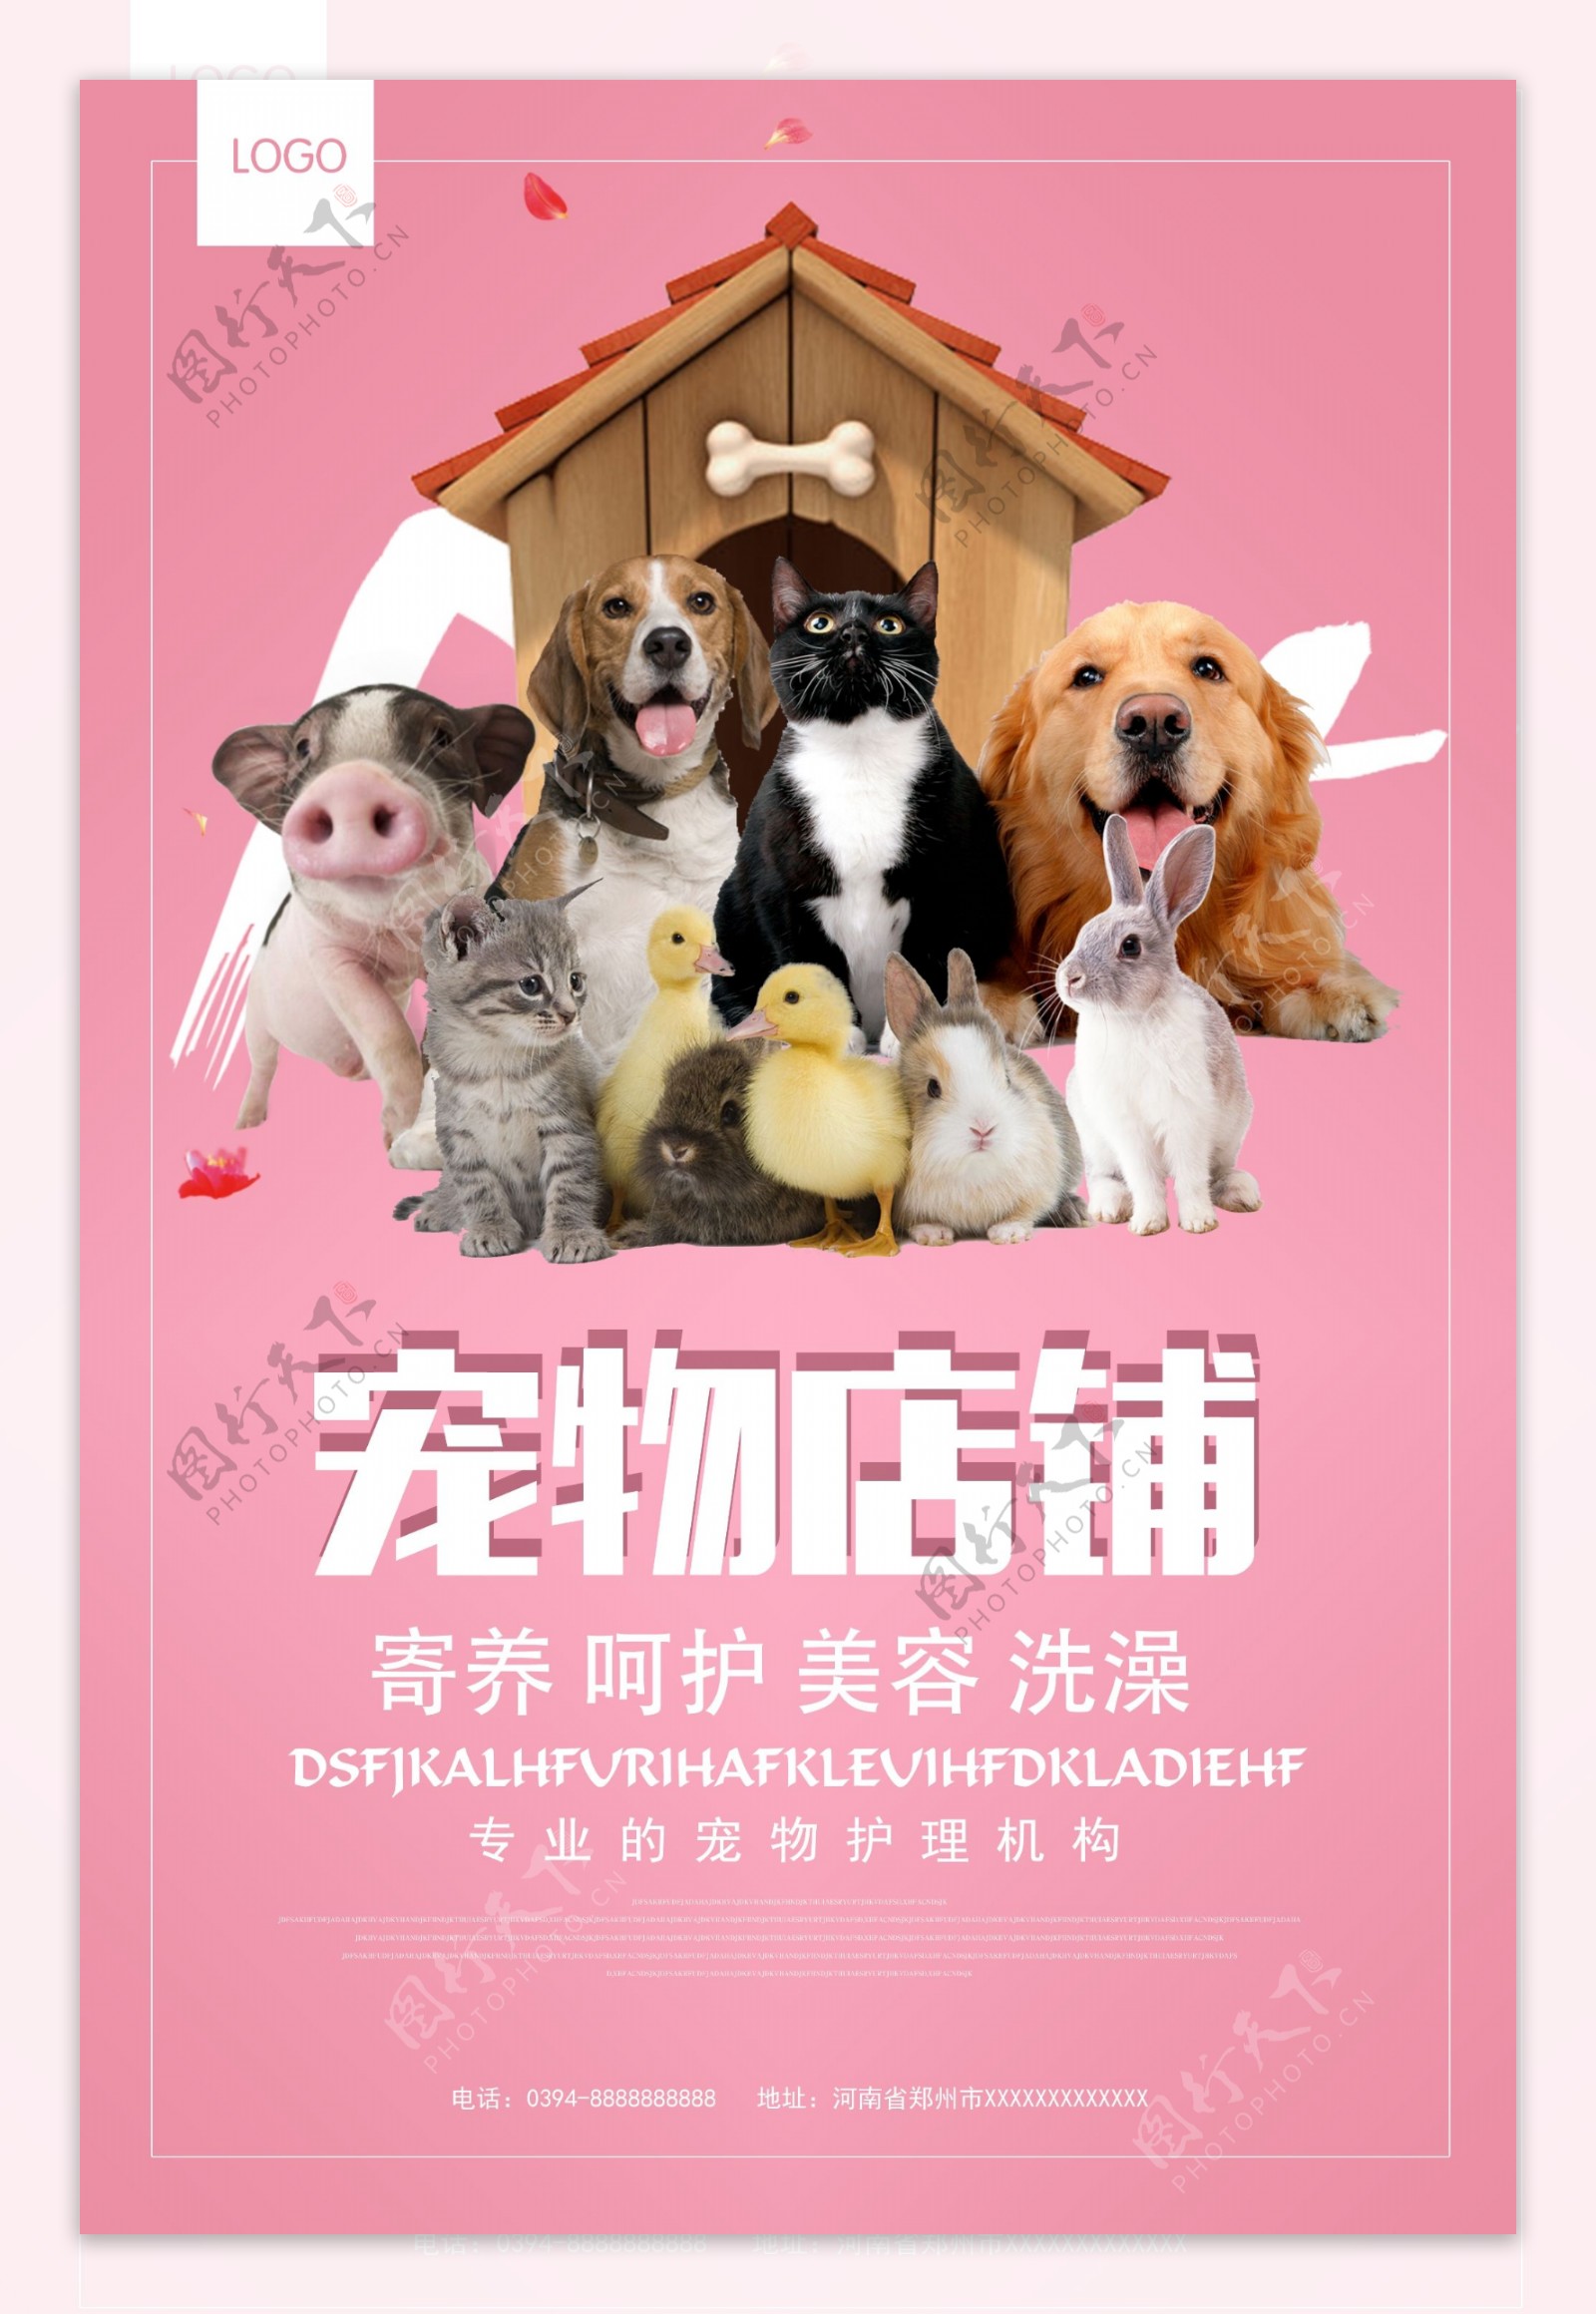 宠物医院店铺宣传海报